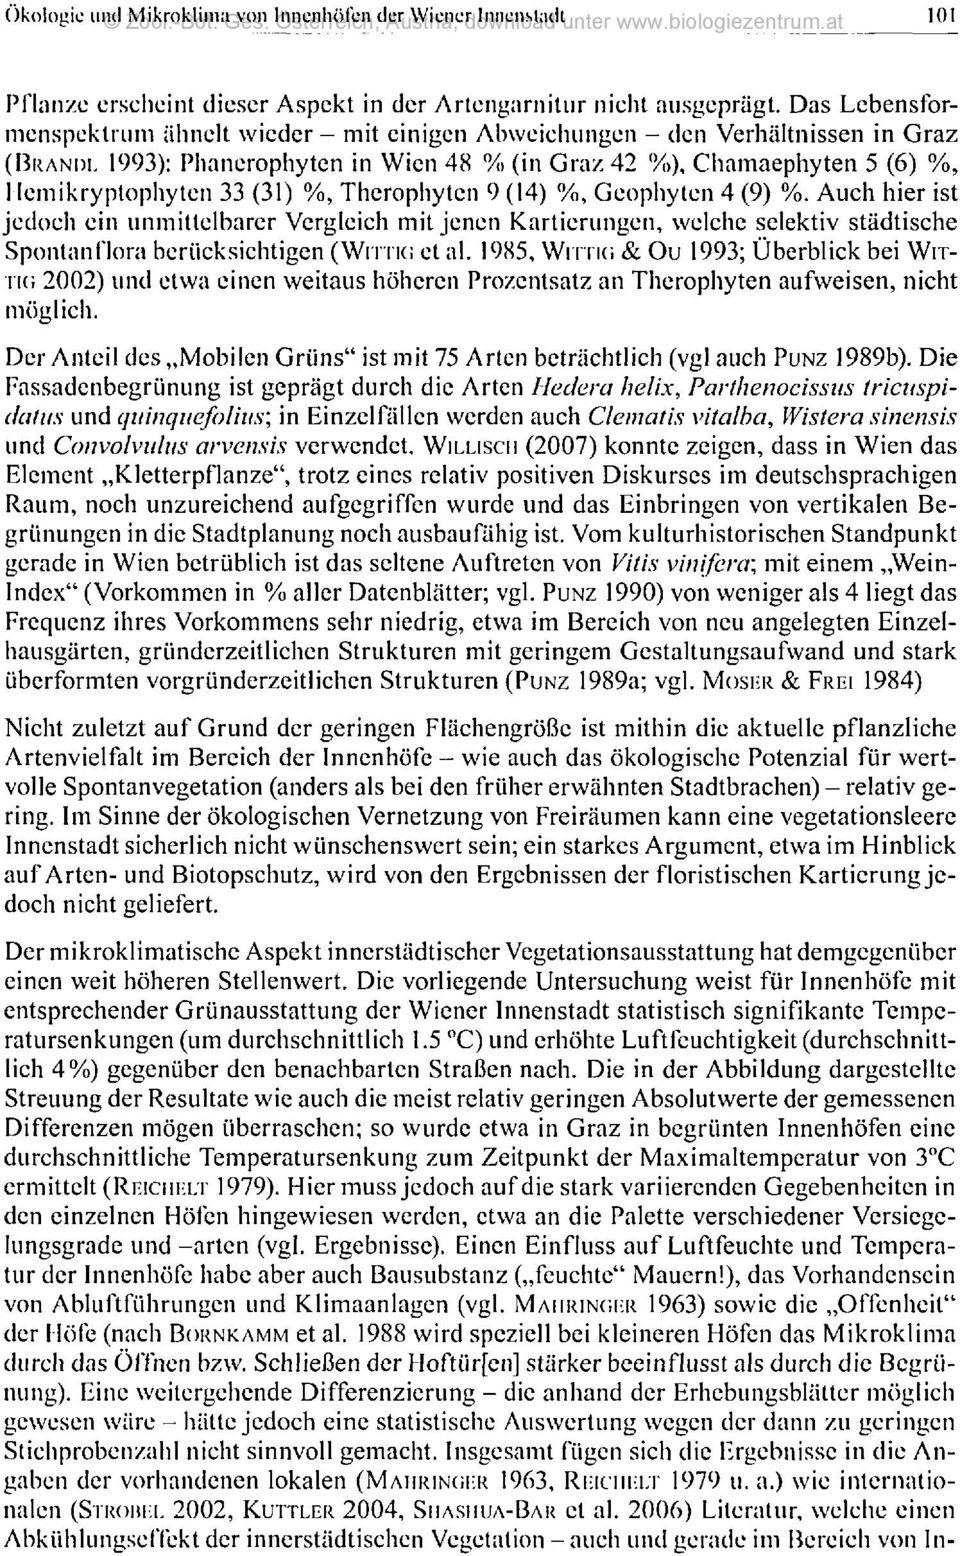 Das Lebensformenspektrum ähnelt wieder - mit einigen Abweichungen - den Verhältnissen in Graz (BRANDL 1993): Phanerophyten in Wien 48 % (in Graz 42 %), Chamaephyten 5 (6) %, I lemikryptophyten 33